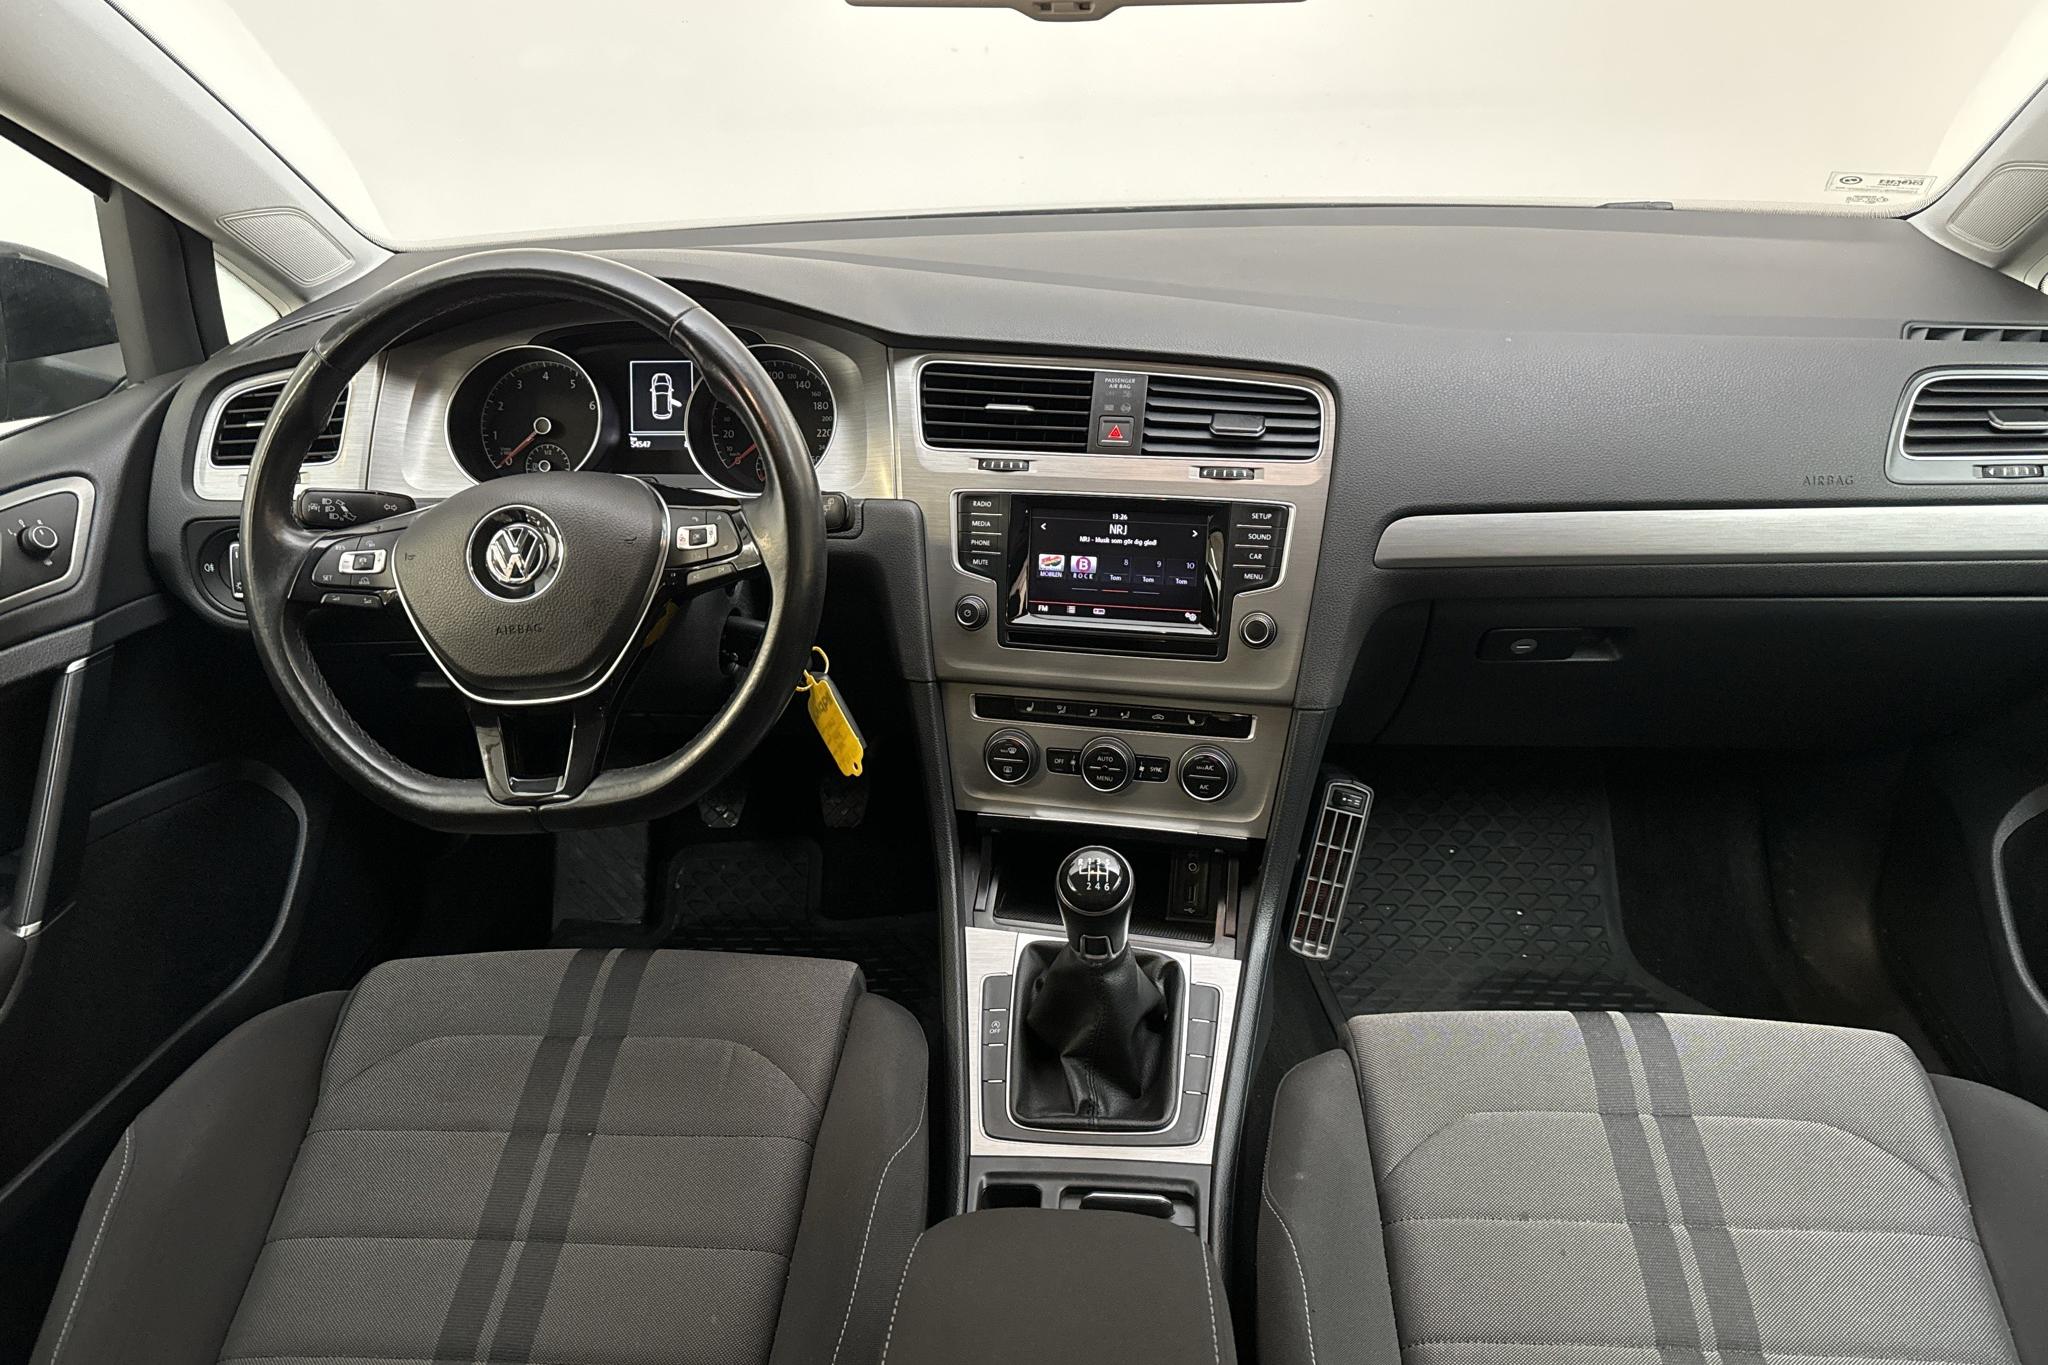 VW Golf VII 1.4 TGI 5dr (110hk) - 54 530 km - Käsitsi - must - 2015